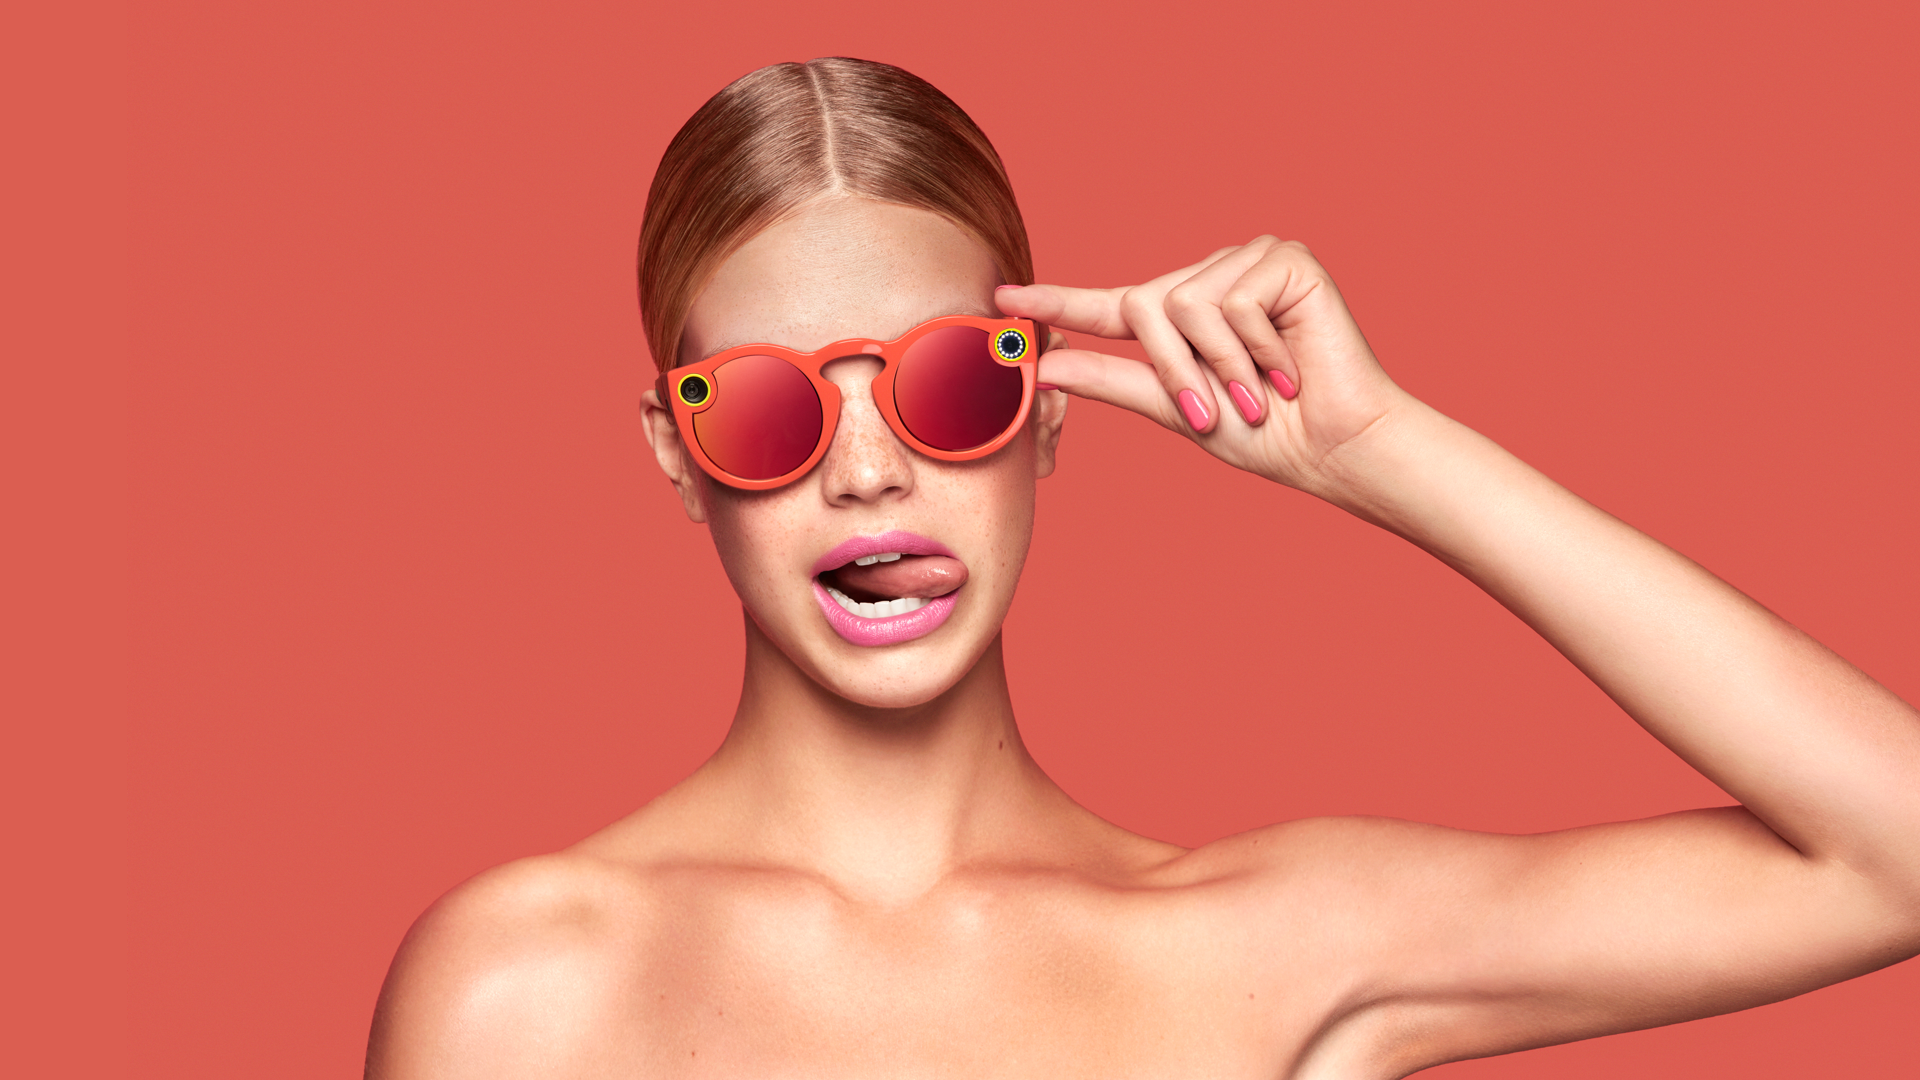 Snap Inc.'in Spectacles gözlükleri eBay'de $2500 fiyatlara alıcı buluyor